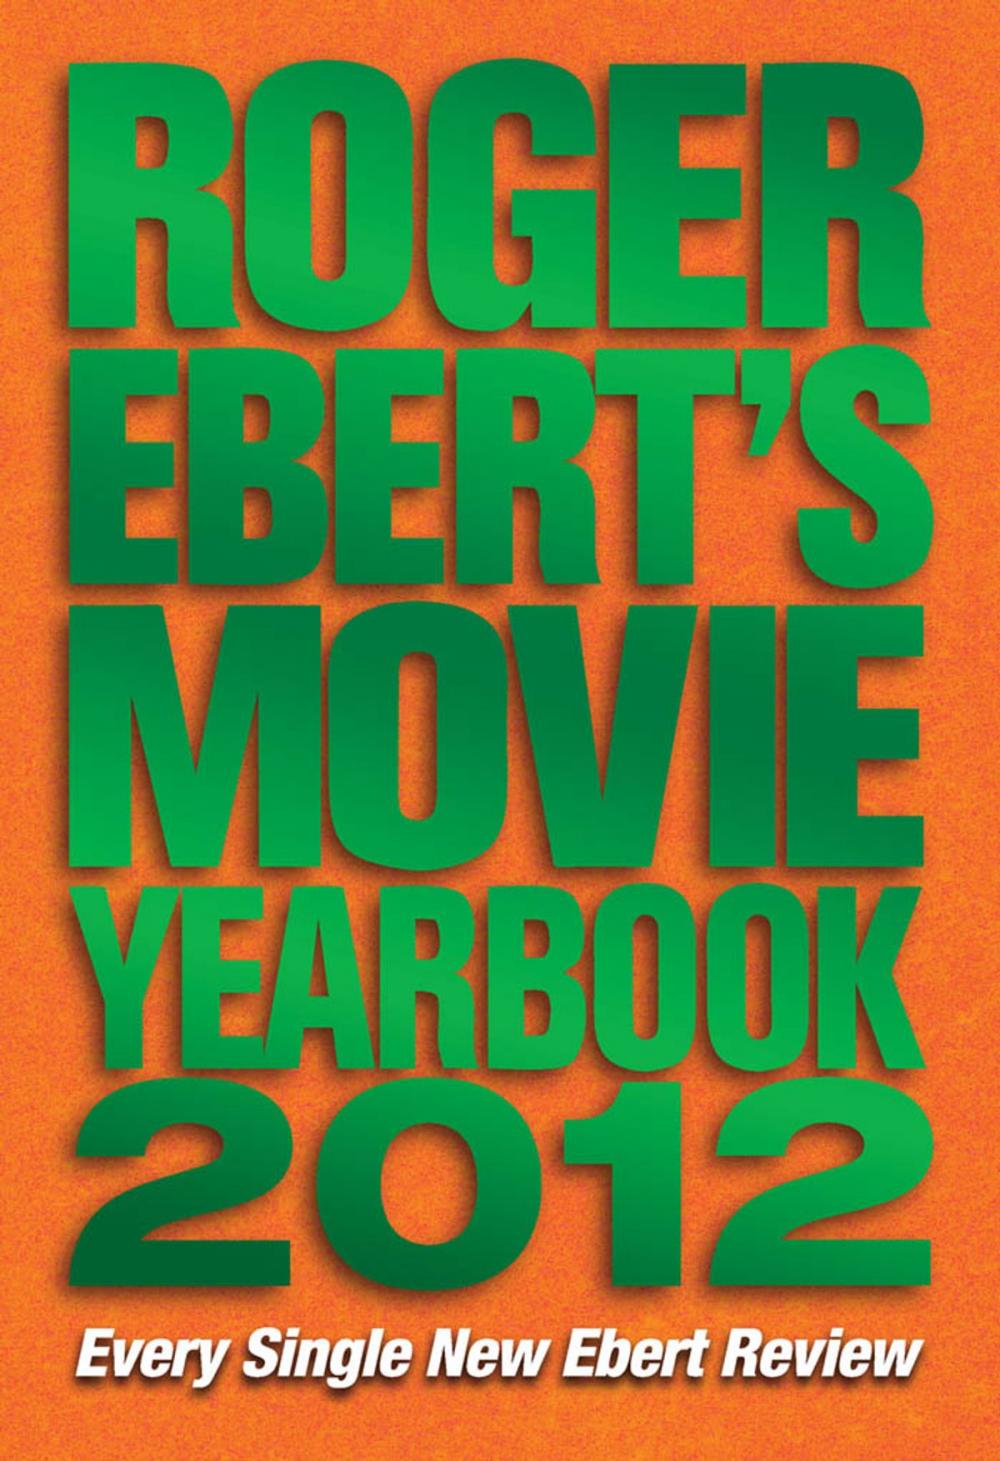 Big bigCover of Roger Ebert's Movie Yearbook 2012